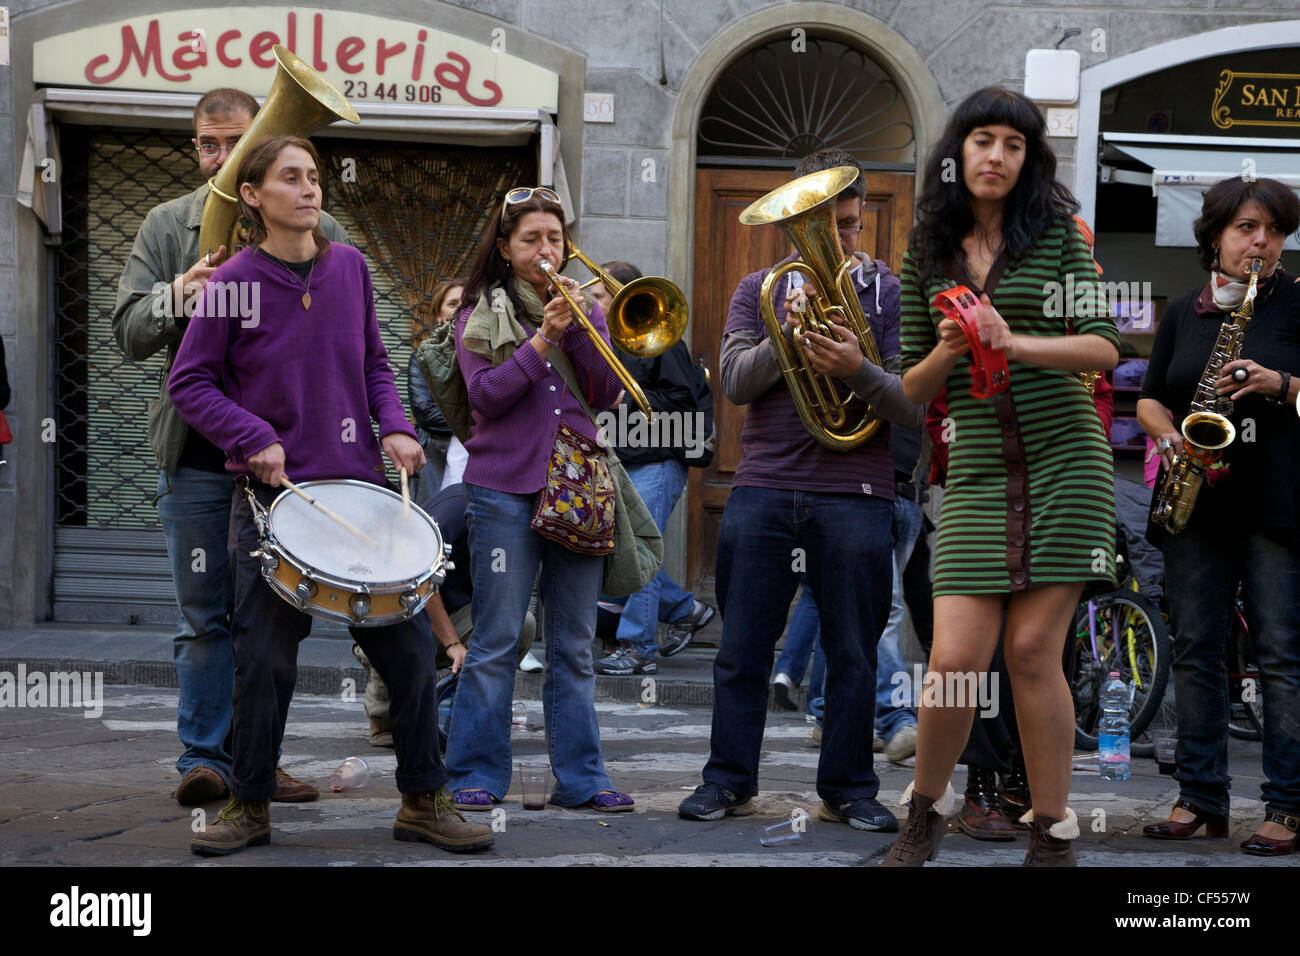 Fiati sprecati, popolari street band, eseguire nelle strade di Firenze, Toscana, Italia, Europa Foto Stock